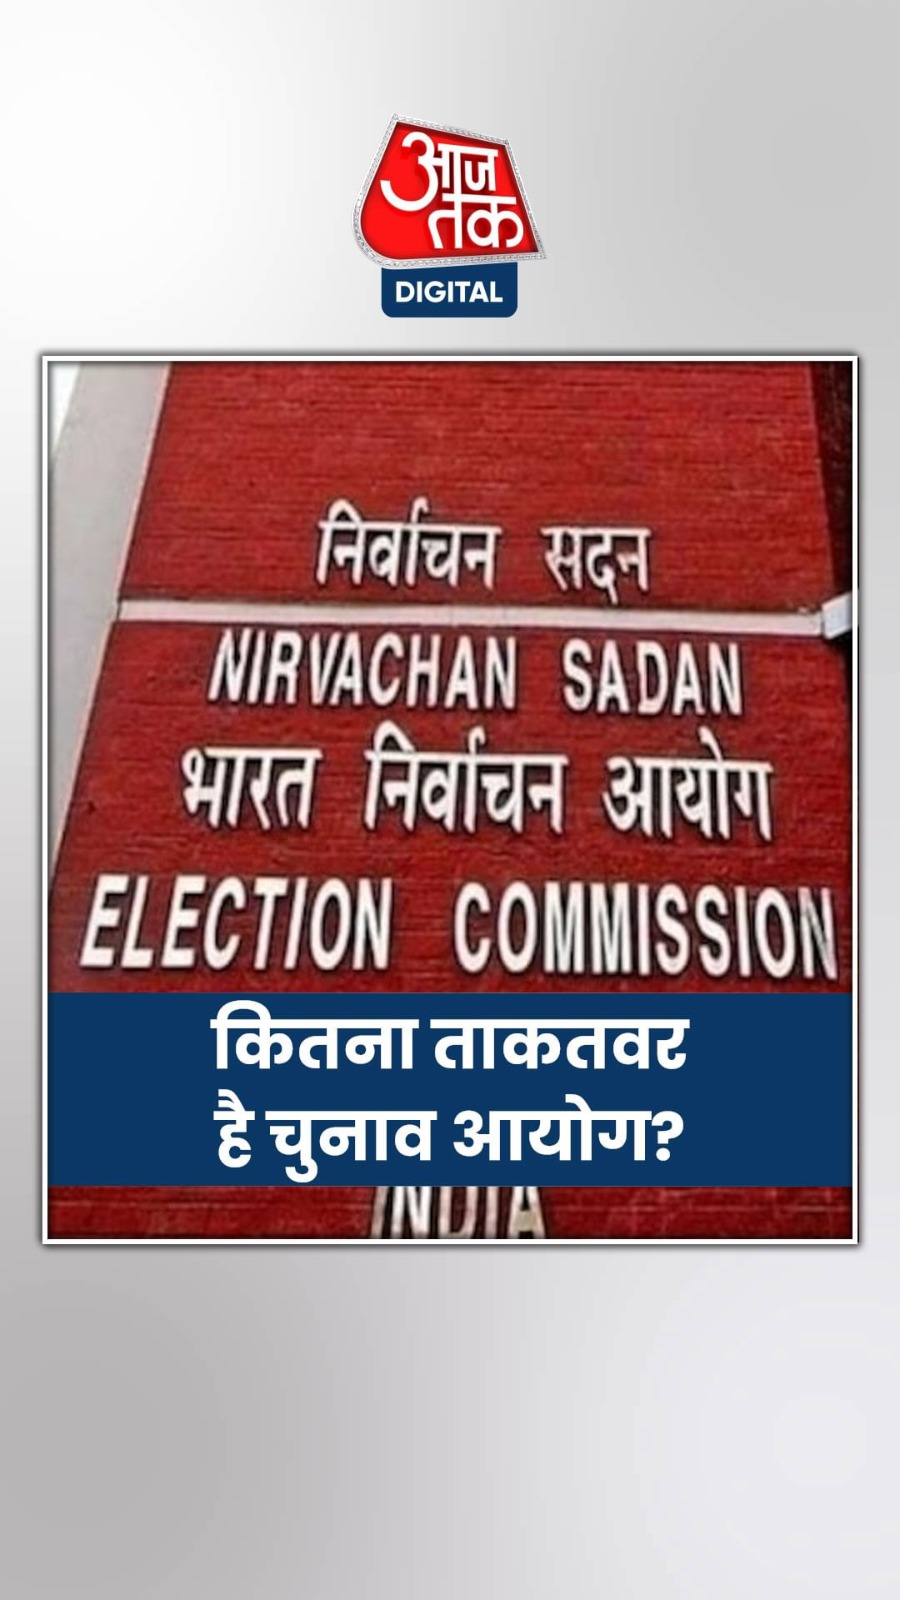 लोकसभा चुनाव 2024 के बीच चुनाव आयोग ने देश की दो बड़ी पार्टियां बीजेपी और कांग्रेस को नोटिस जारी किया है